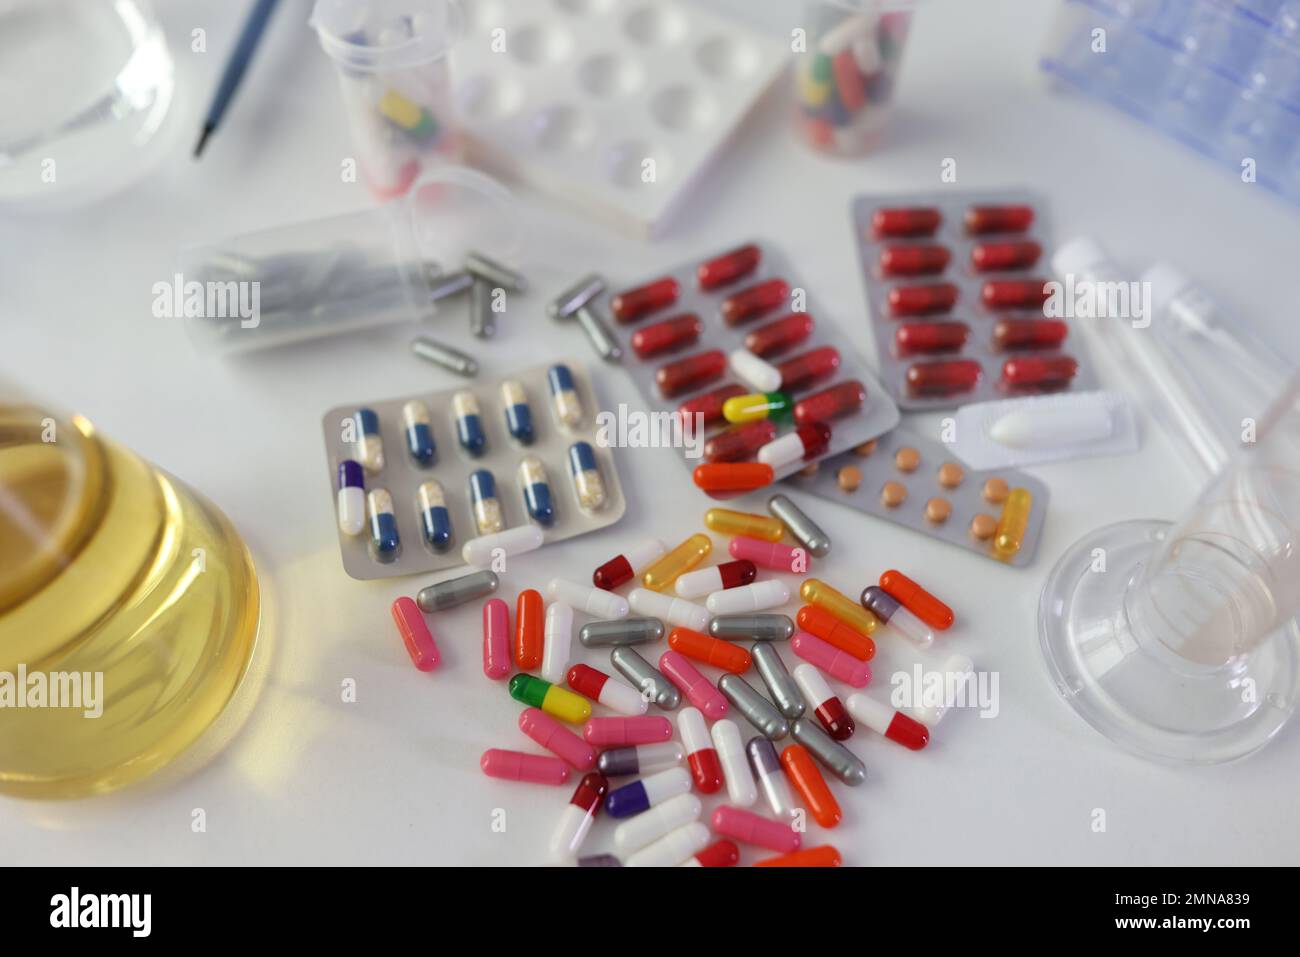 Molte pillole mediche e farmaci diversi con matracci sul tavolo da laboratorio, vista dall'alto. Foto Stock